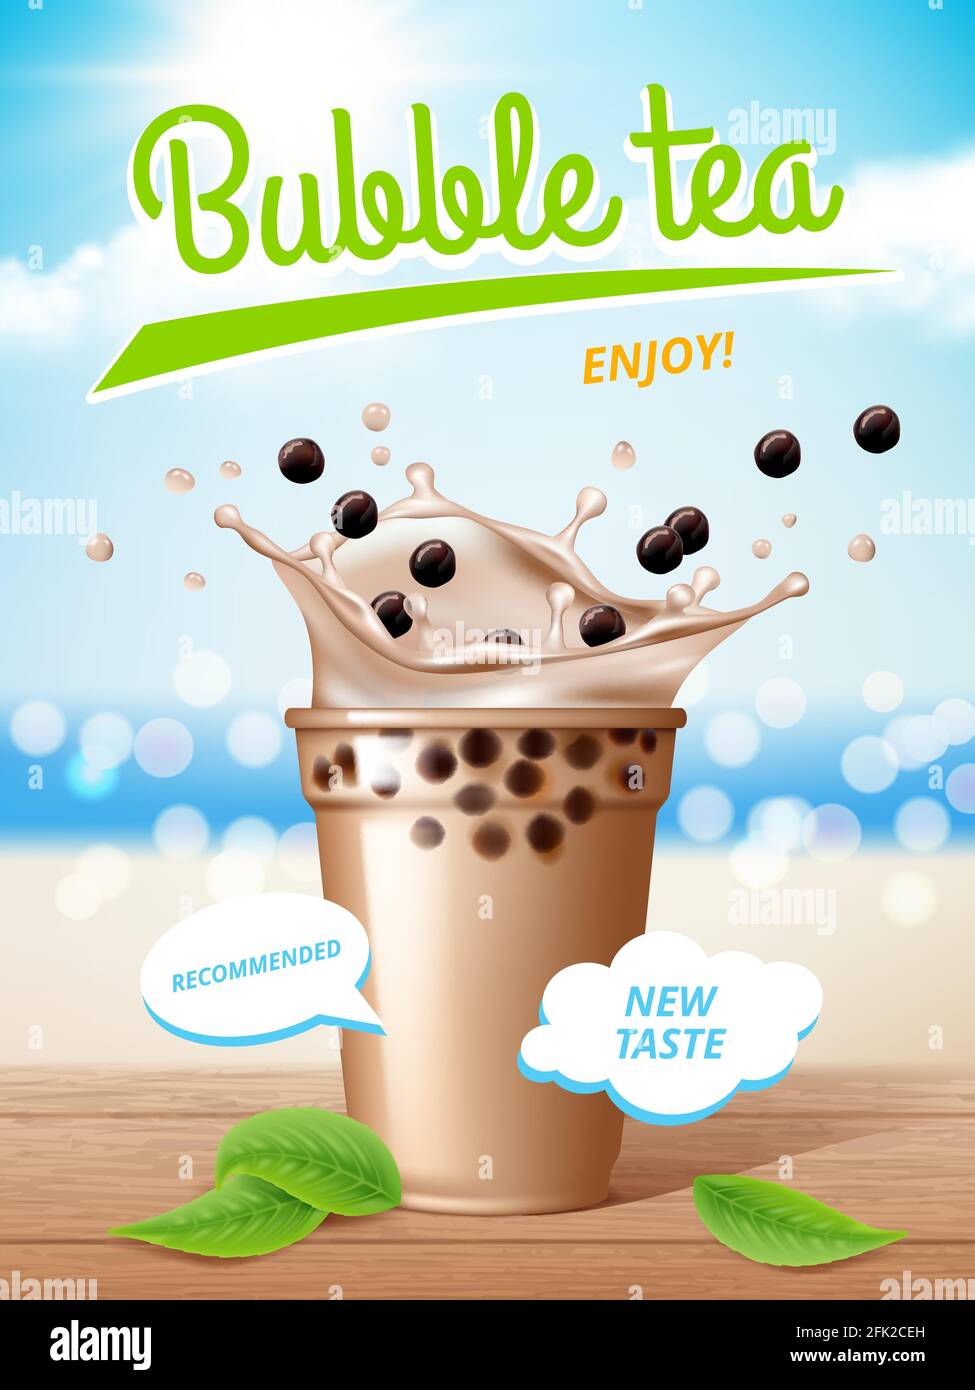 Poster mit Seifenblasentee. Fließende Milch köstliche Tapioca Getränke mit Spritzern Werbeplakate Vektor Stock Vektor